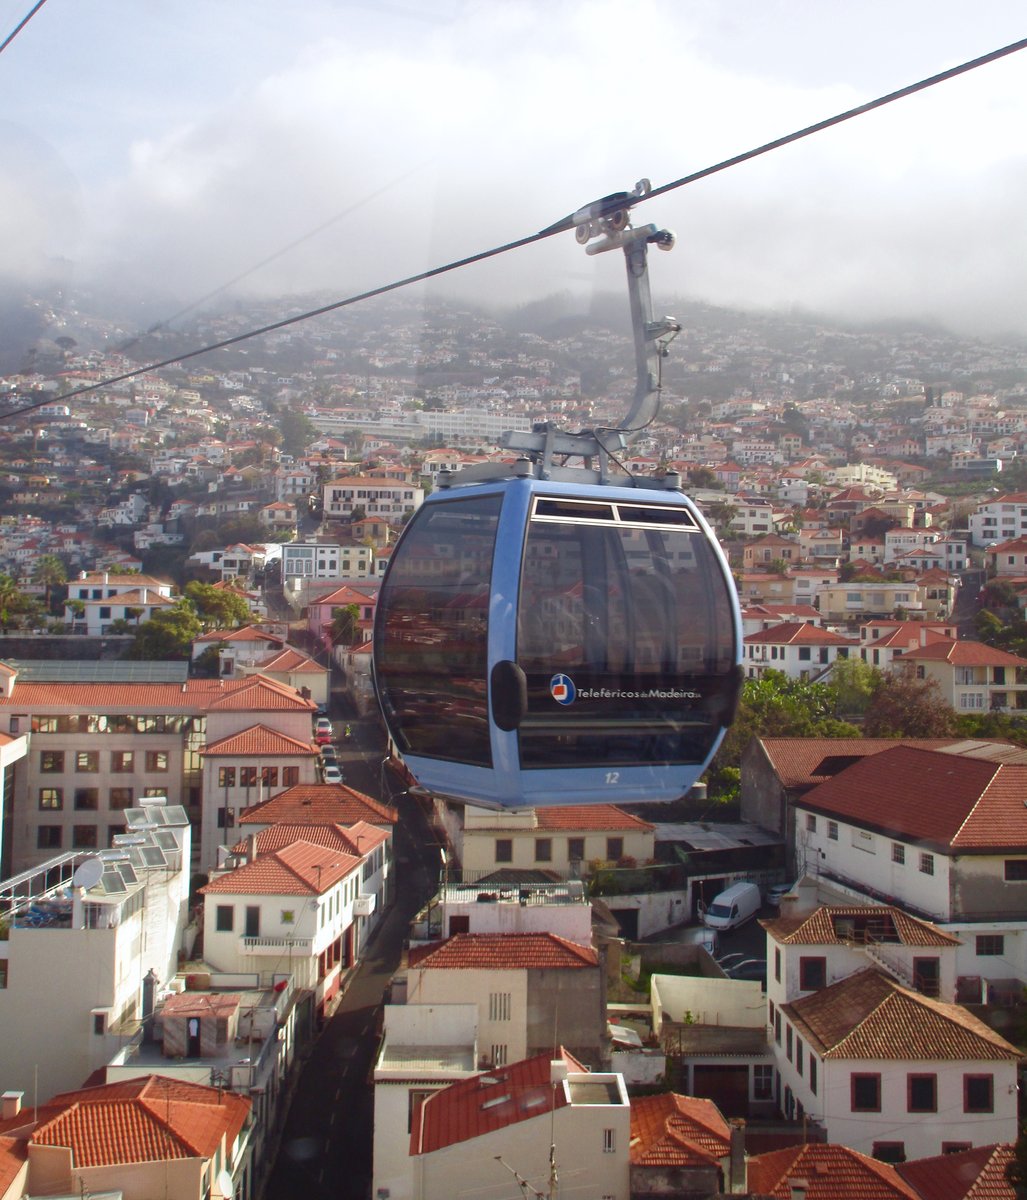 TELEFÉRICOS DA MADEIRA: Die Seilbahn zwischen Funchal und Monte aufgenommen am 18. April 2017 bei einer Seilbahnfahrt von Funchal nach Monte über der Stadt Funchal, Madeira. Die  leere  Nr. 12 im Bild unterwegs zur Talstation in Funchal.